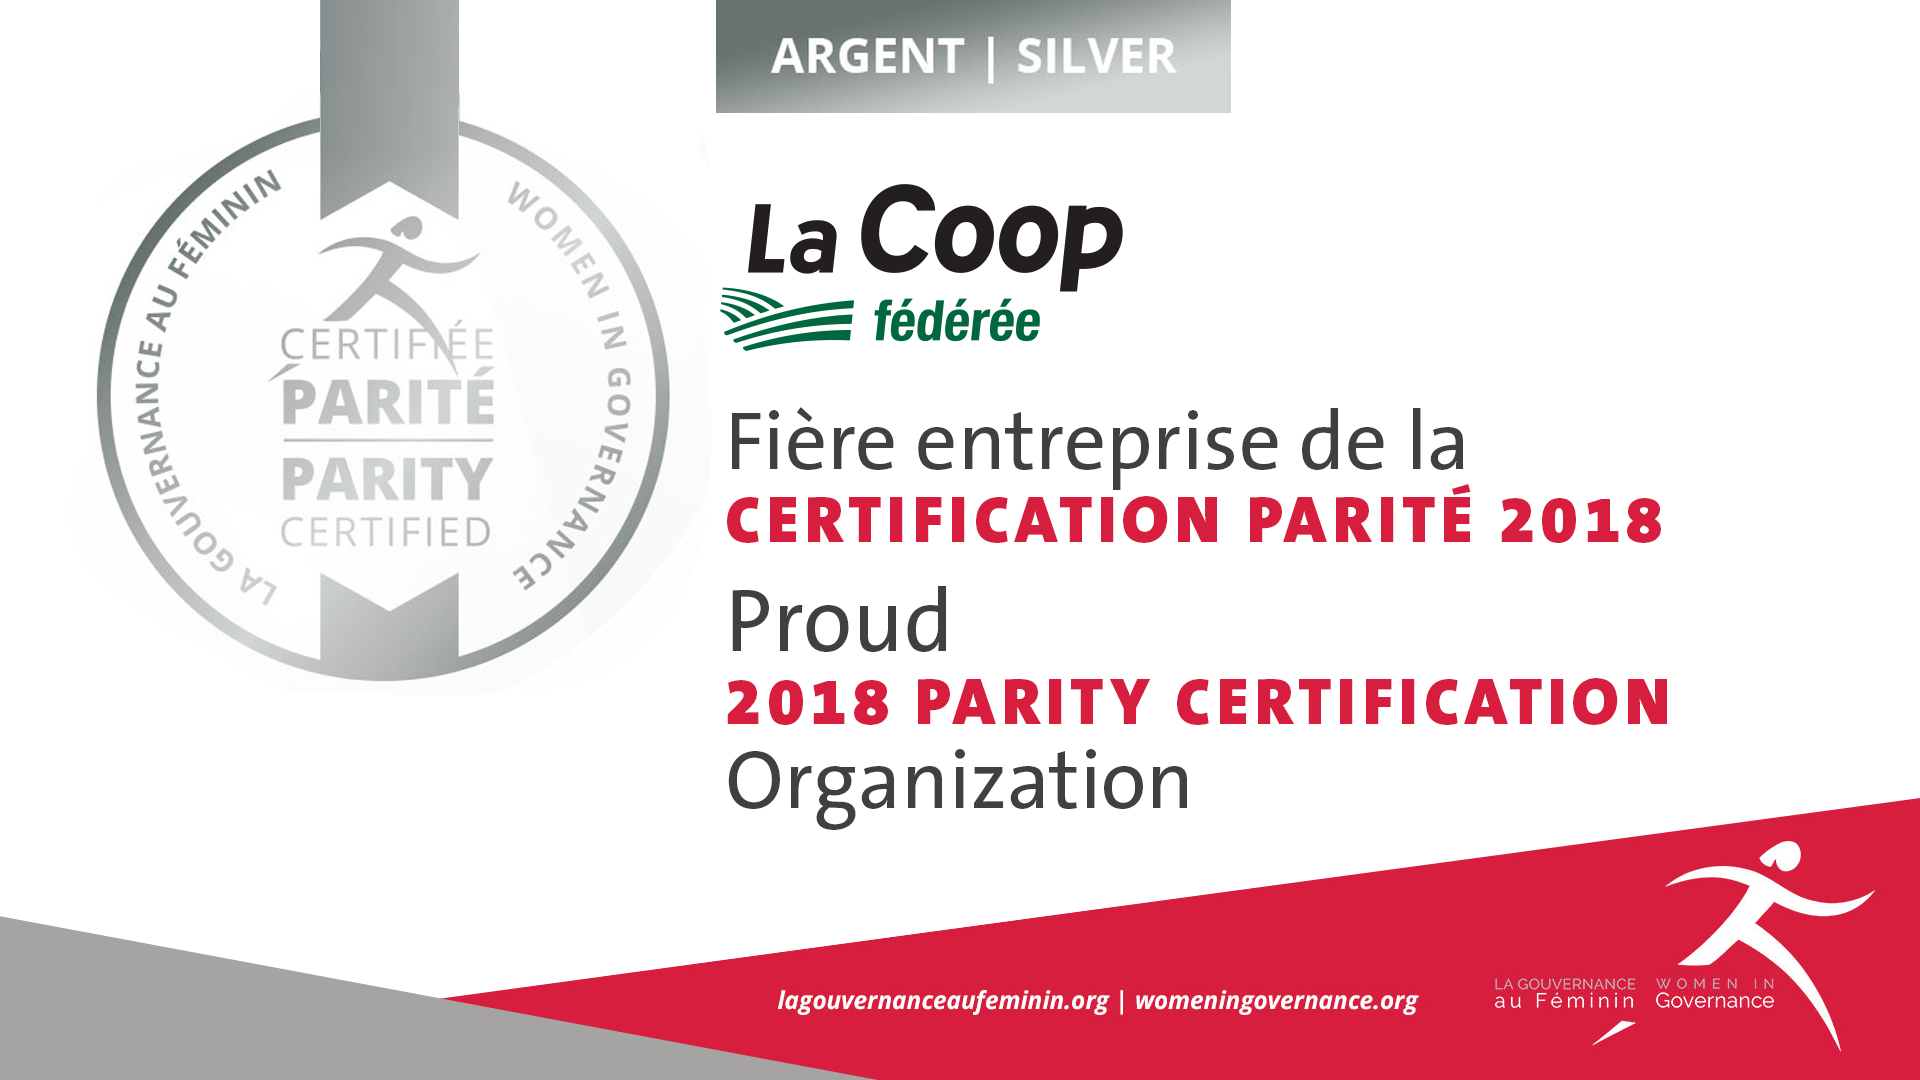 Certification parité